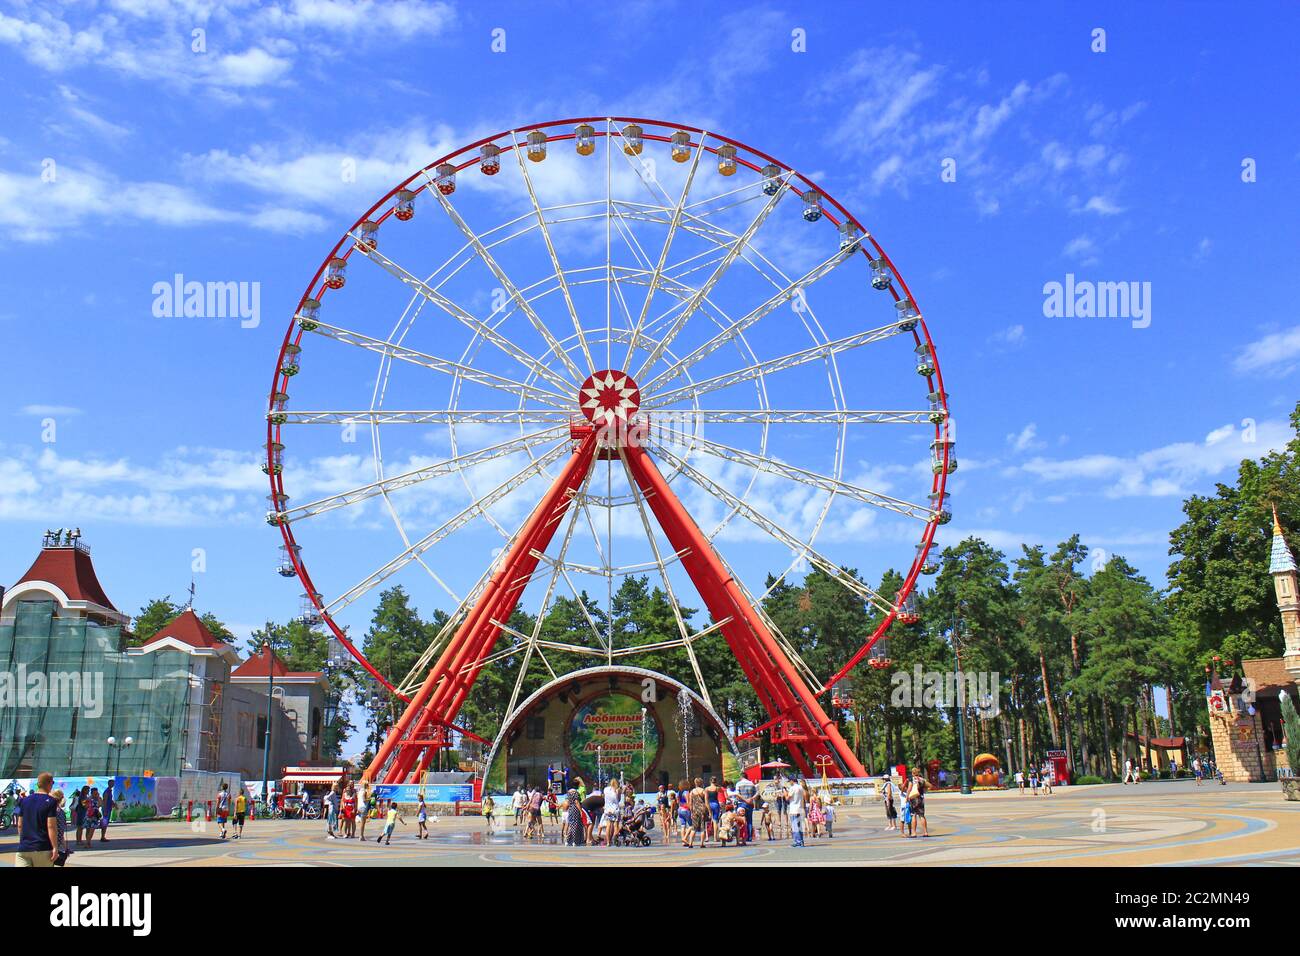 Grande roue dans le parc Gorky à Kharkiv. Personnes dans le parc de la ville avec des divertissements Banque D'Images